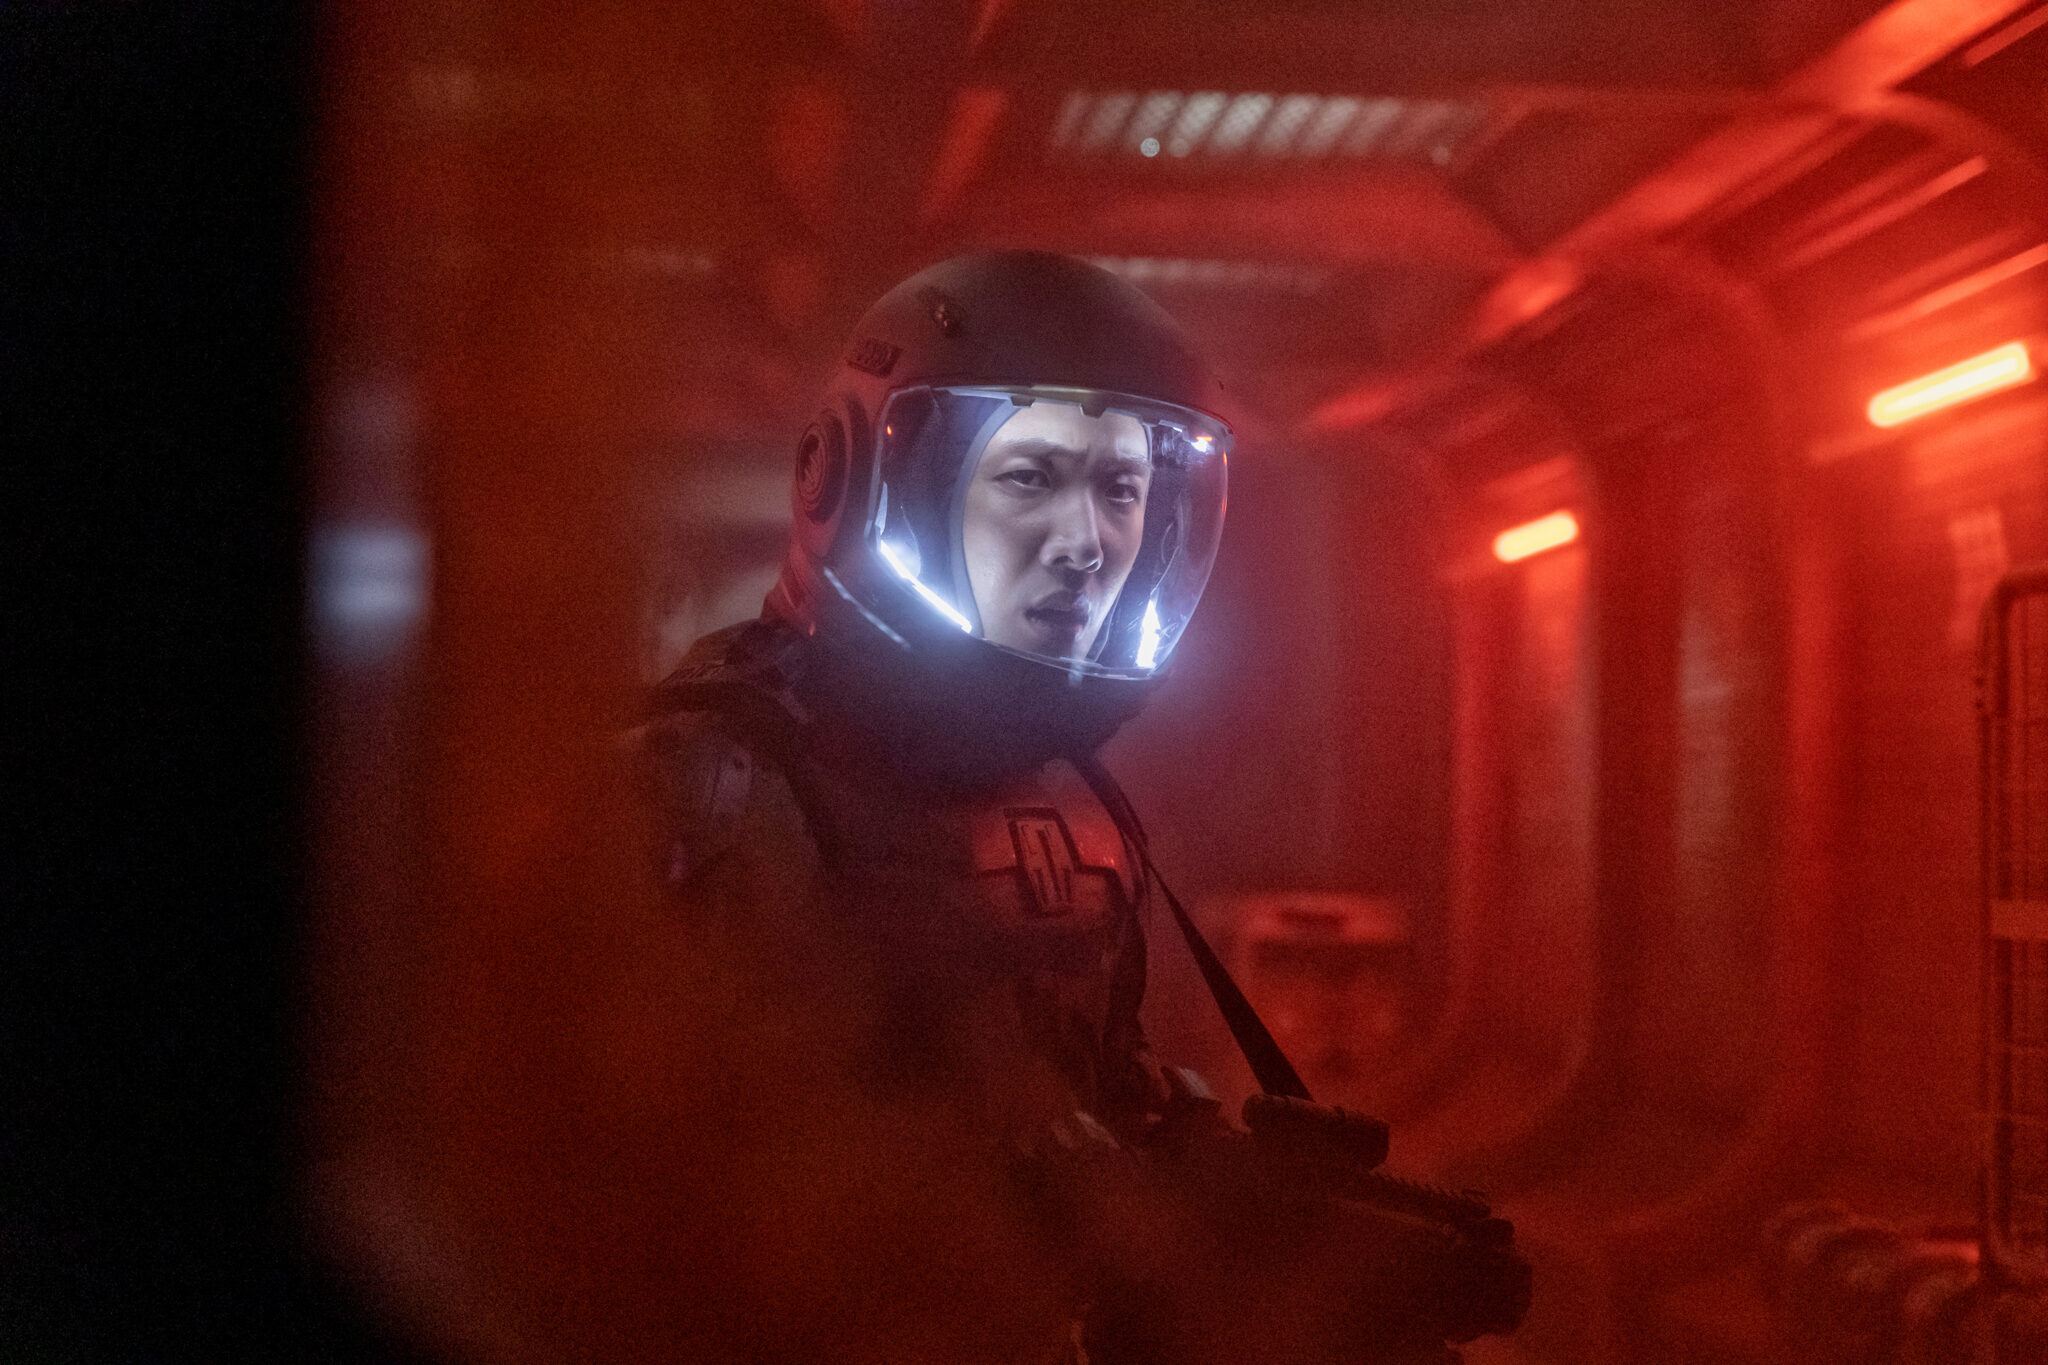 Ein Astronaut in einer rotbeleuchteten Raumstation mit ernsten Blick unter seinem Helm.